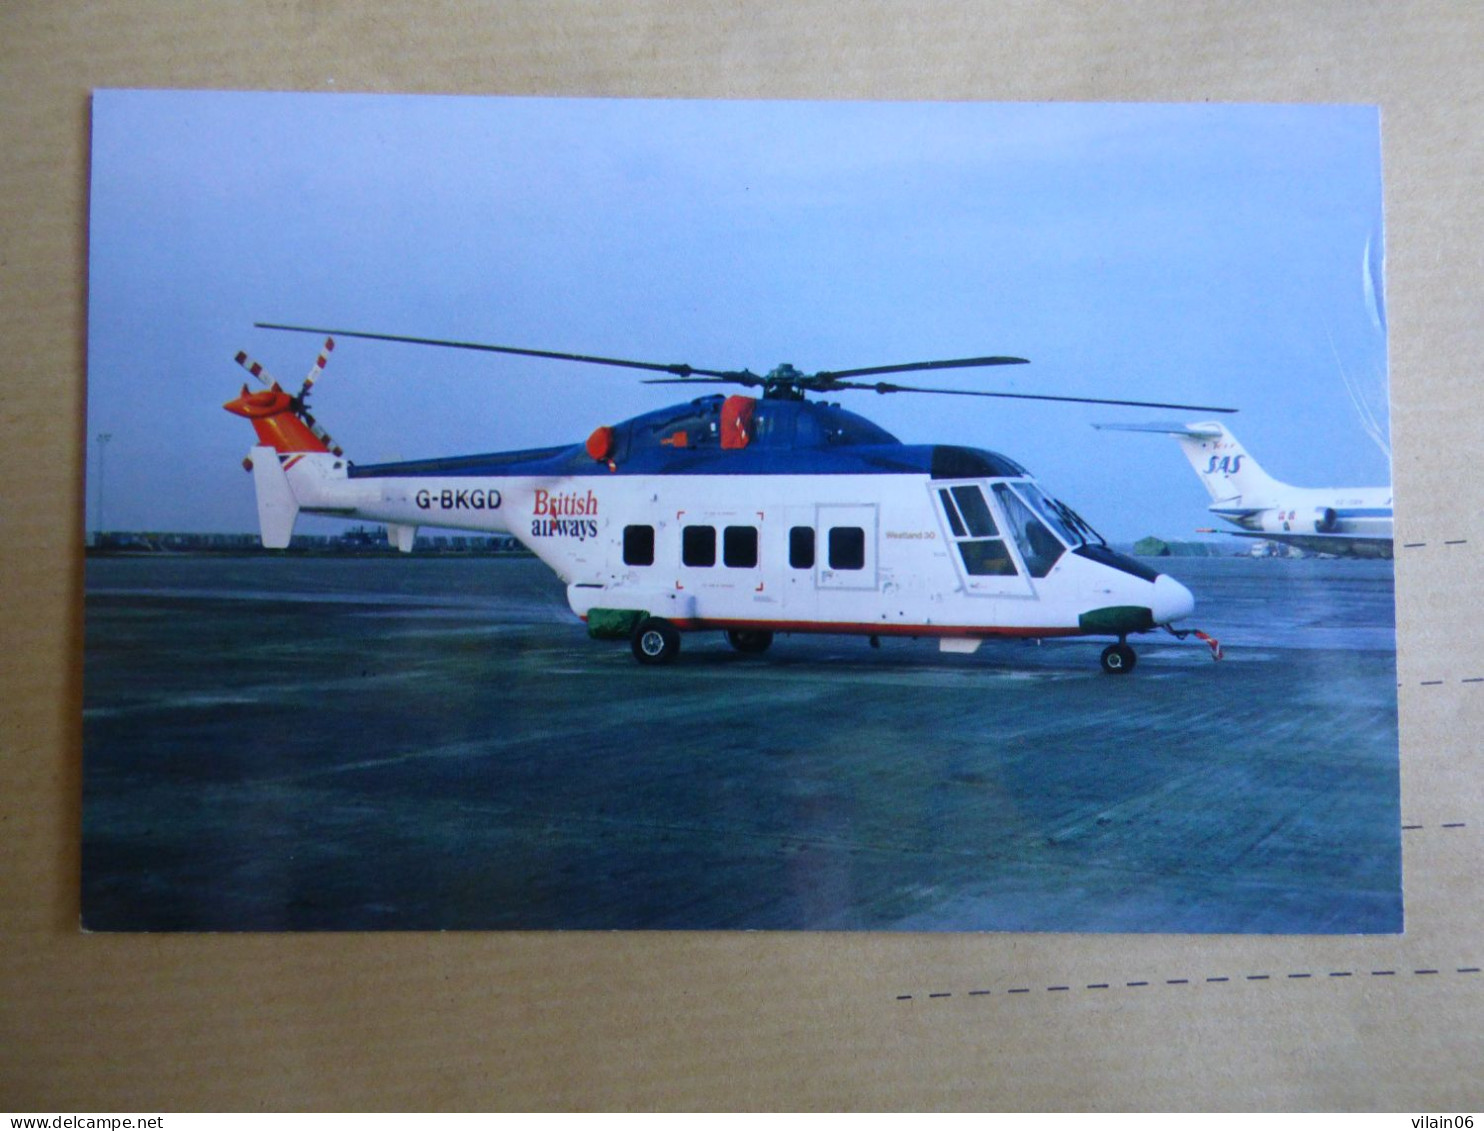 WESTLAND 30   BRITISH AIRWAYS  G-BKGD - Helicópteros